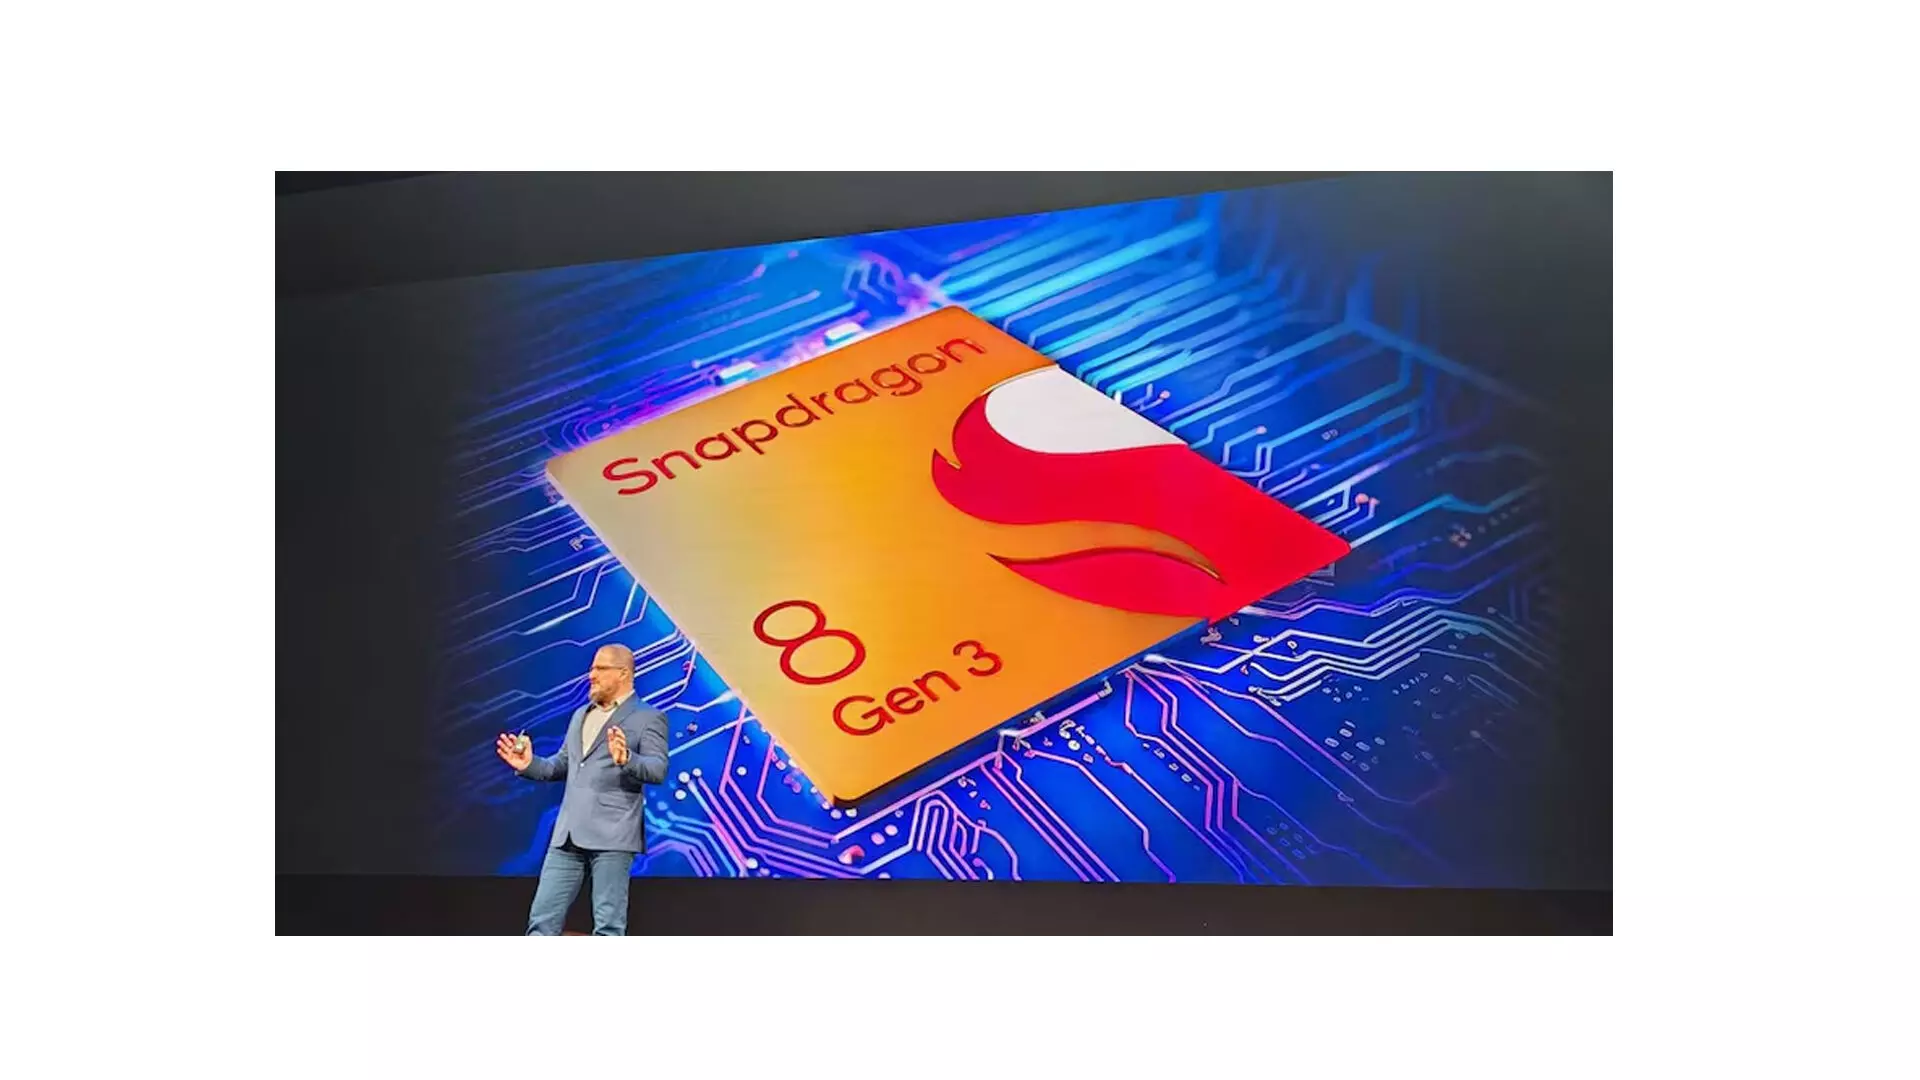 क्वालकॉम 18 मार्च को स्नैपड्रैगन 8, 7 सीरीज प्रोसेसर की घोषणा करेगा: रिपोर्ट